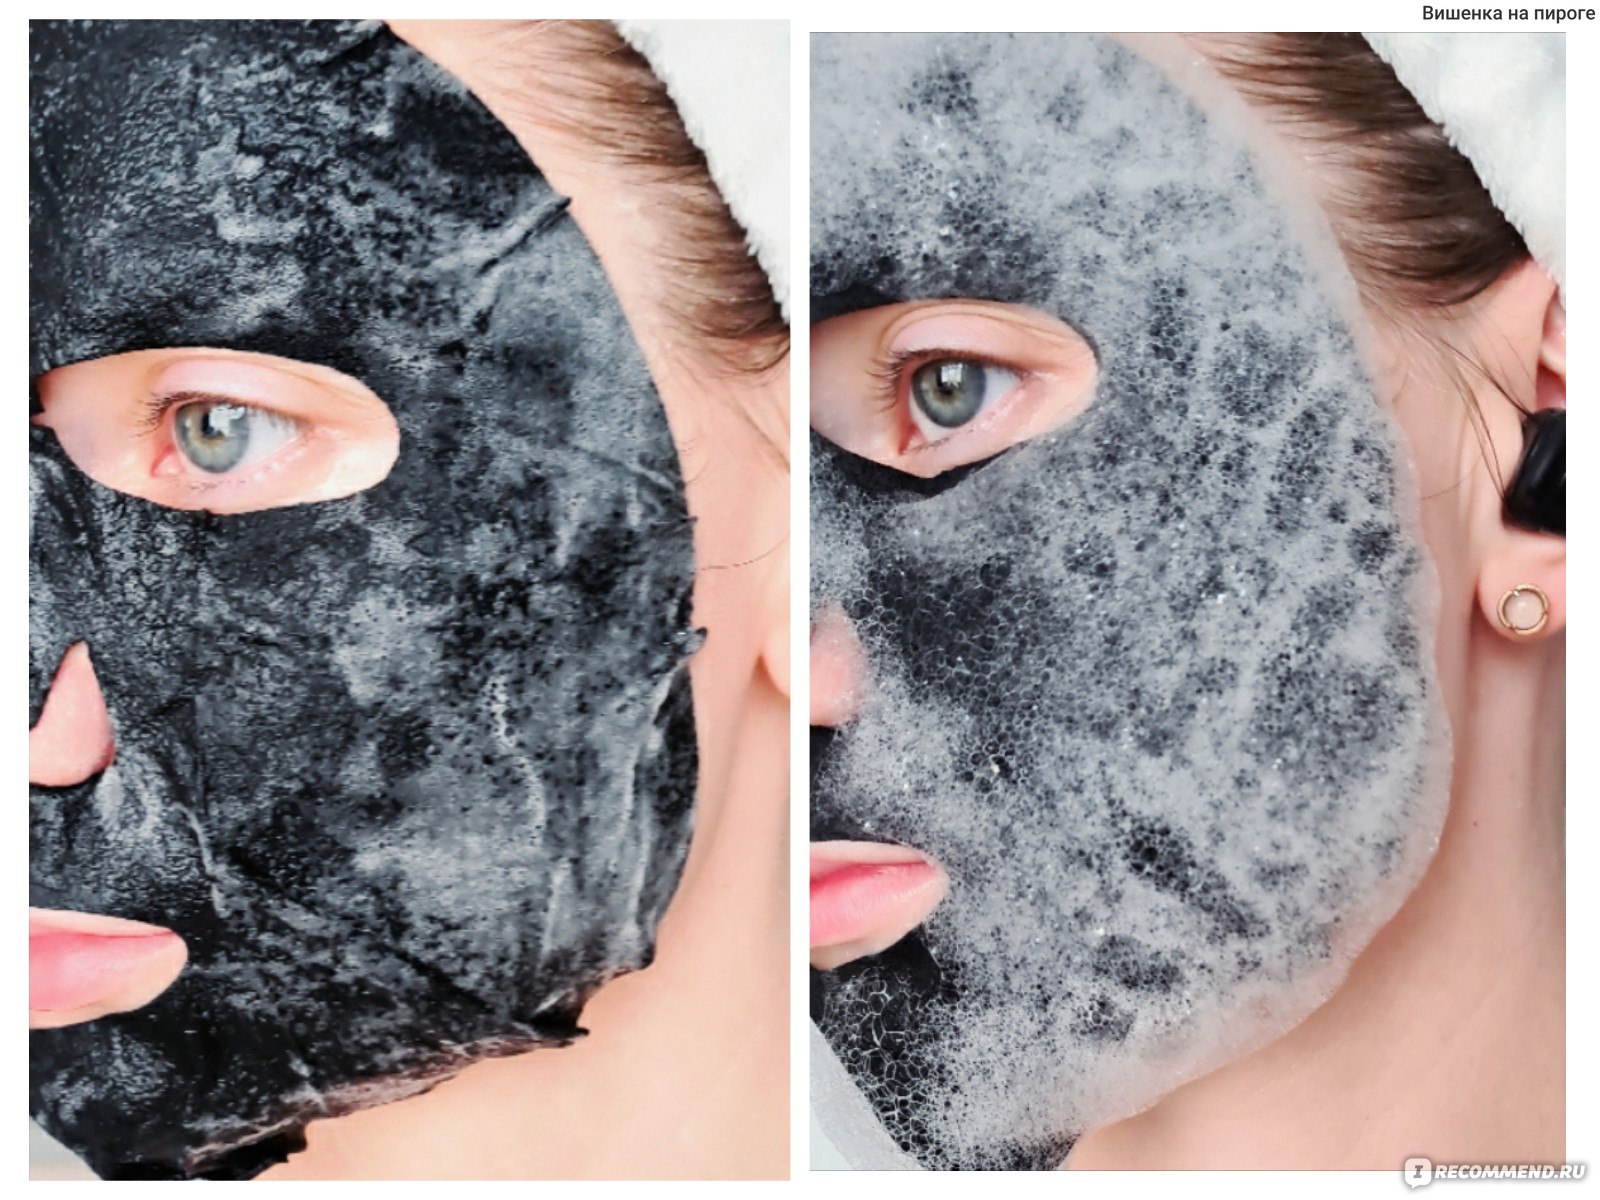 Скин студио маски. Стеллари маска пузырьковая. Skin Studio маска для лица. Пузырьковая маска для лица стеллари. Стеллари скин студио маска пузырьковая для лица.